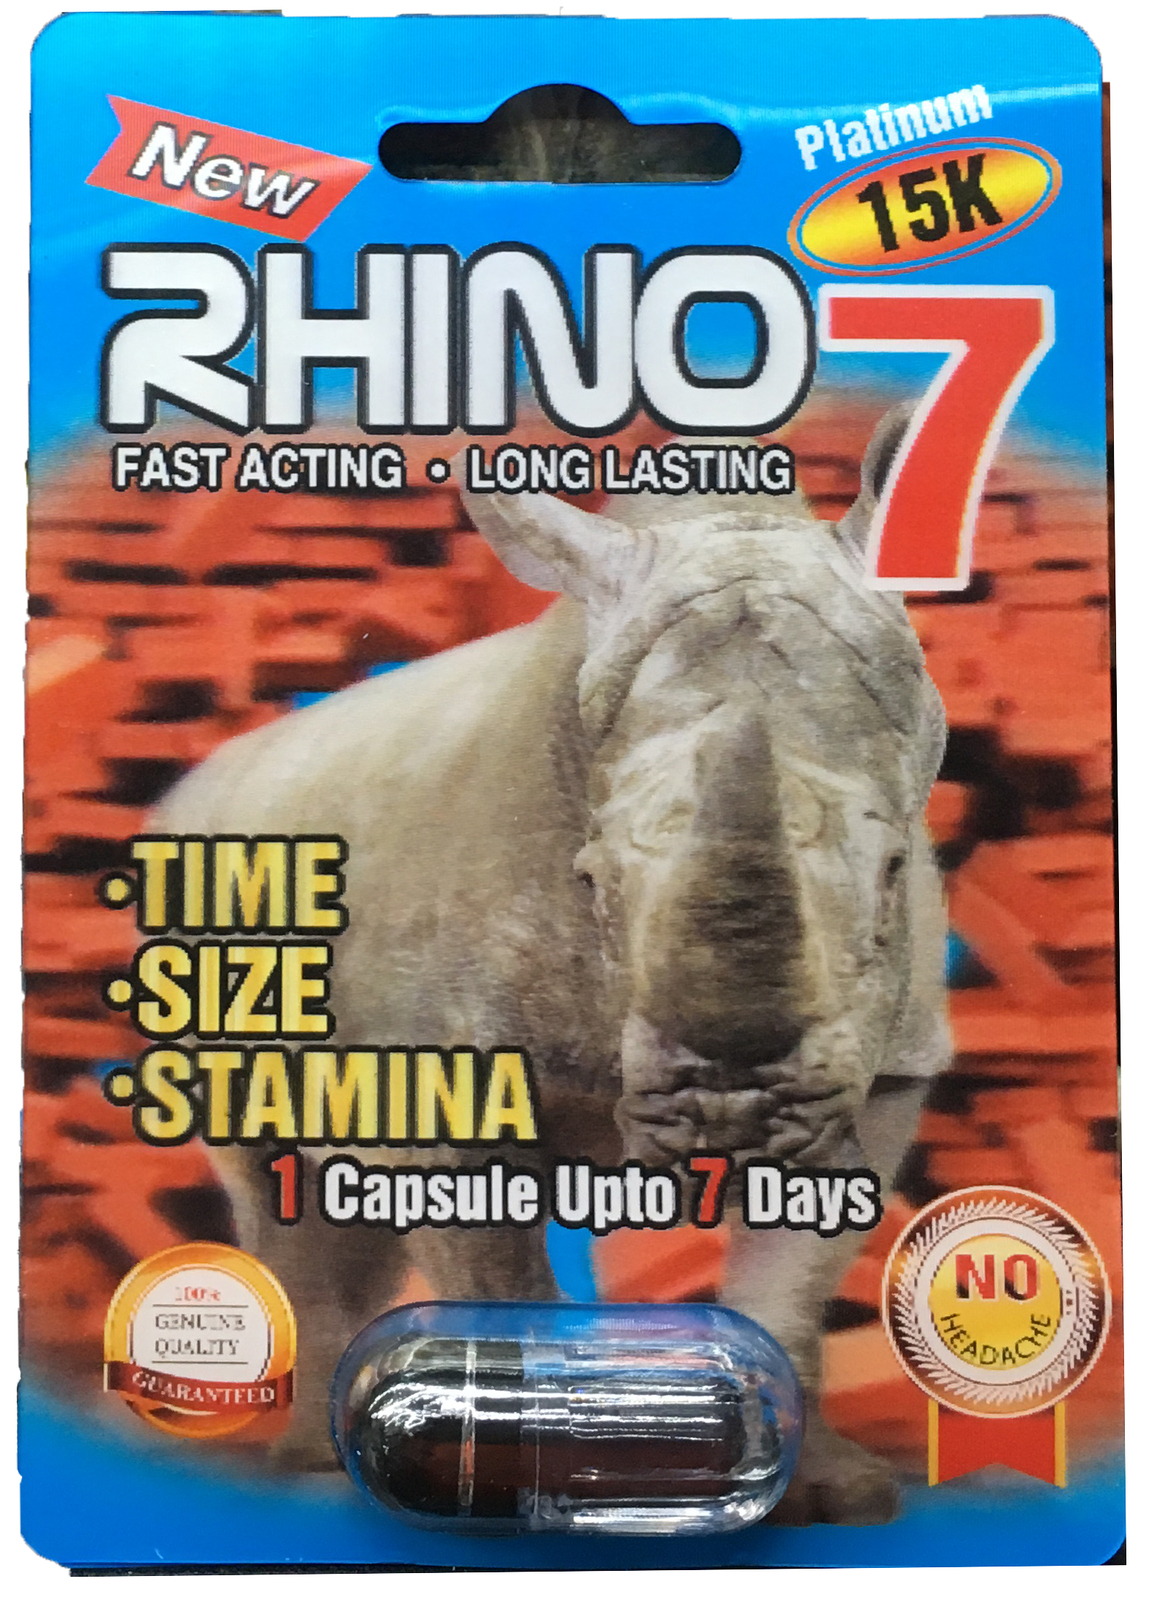 how to take rhino 7 pill